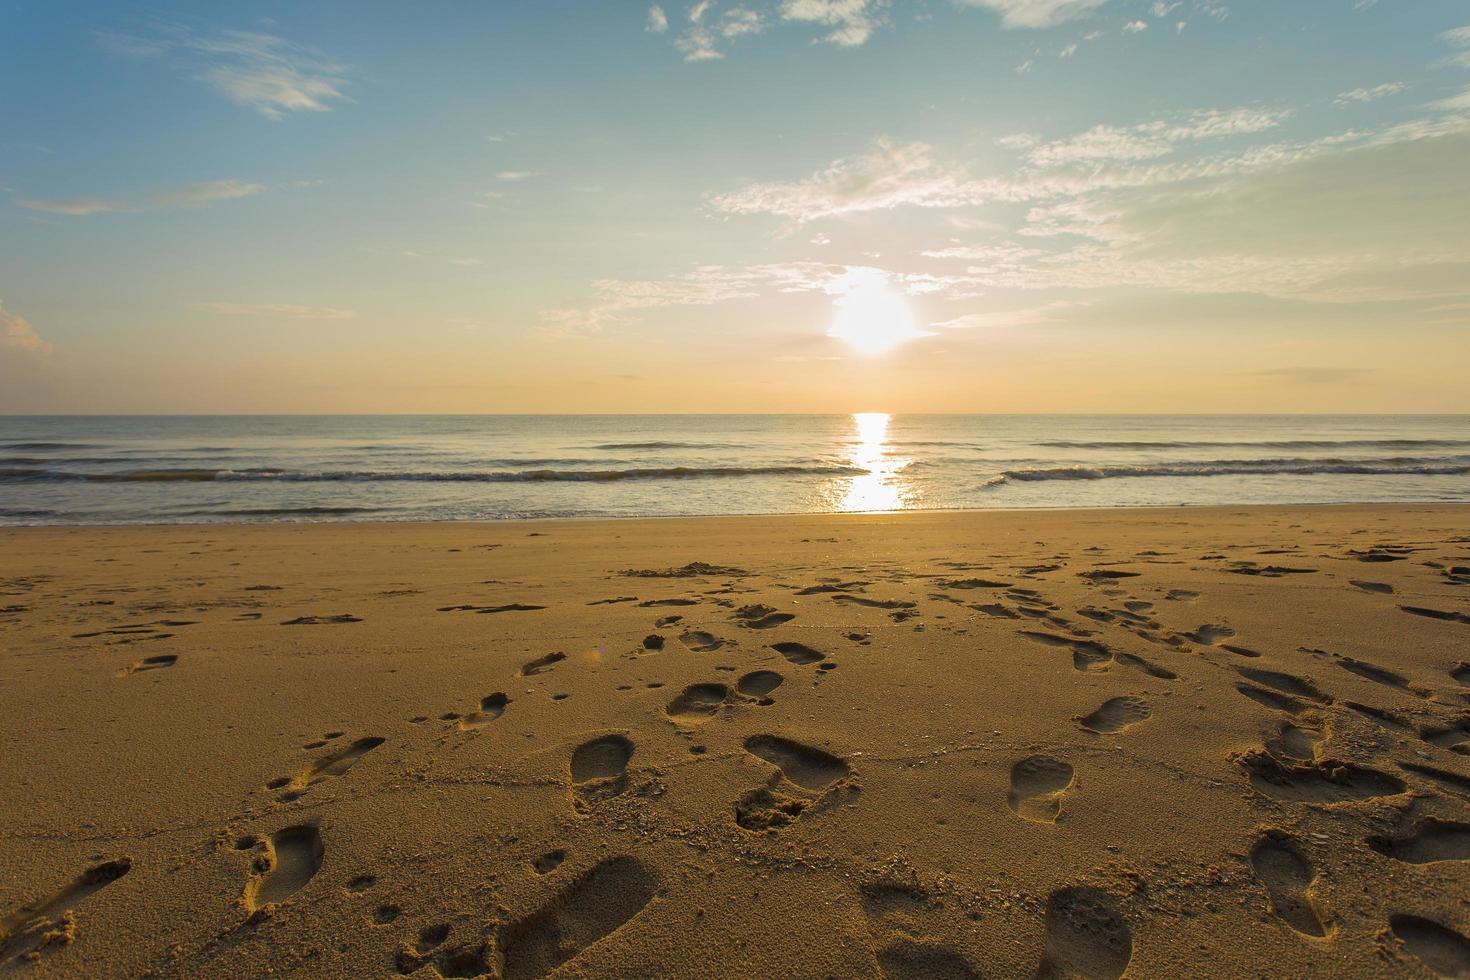 de voetafdrukken werden getoond op het zand in zee en zonsondergang met blauwe lucht. foto